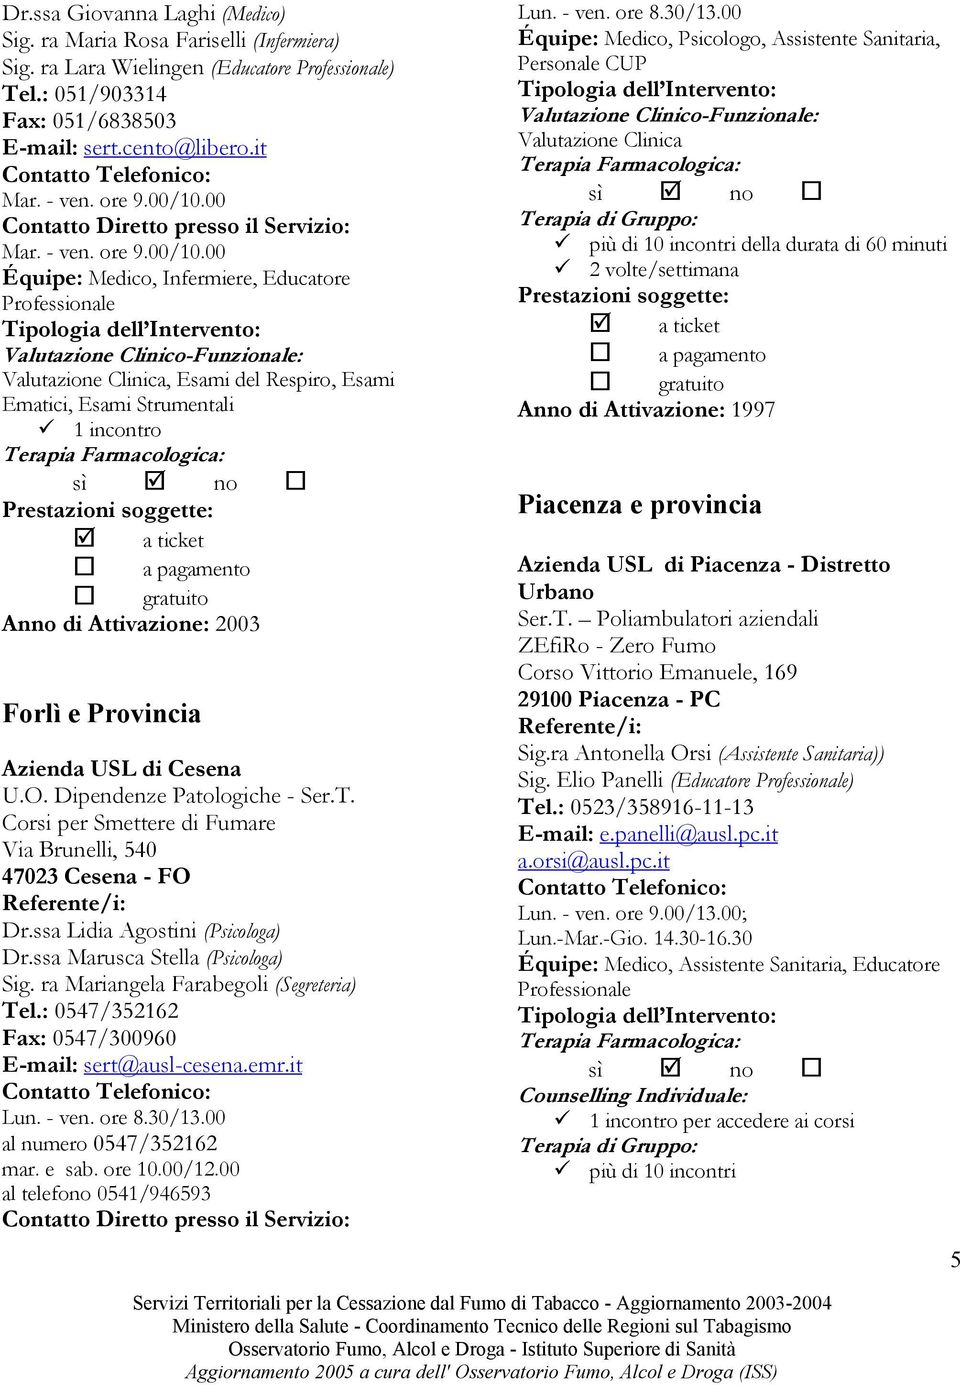 Dipendenze Patologiche - Ser.T. Corsi per Smettere di Fumare Via Brunelli, 540 47023 Cesena - FO Dr.ssa Lidia Agostini (Psicologa) Dr.ssa Marusca Stella (Psicologa) Sig.